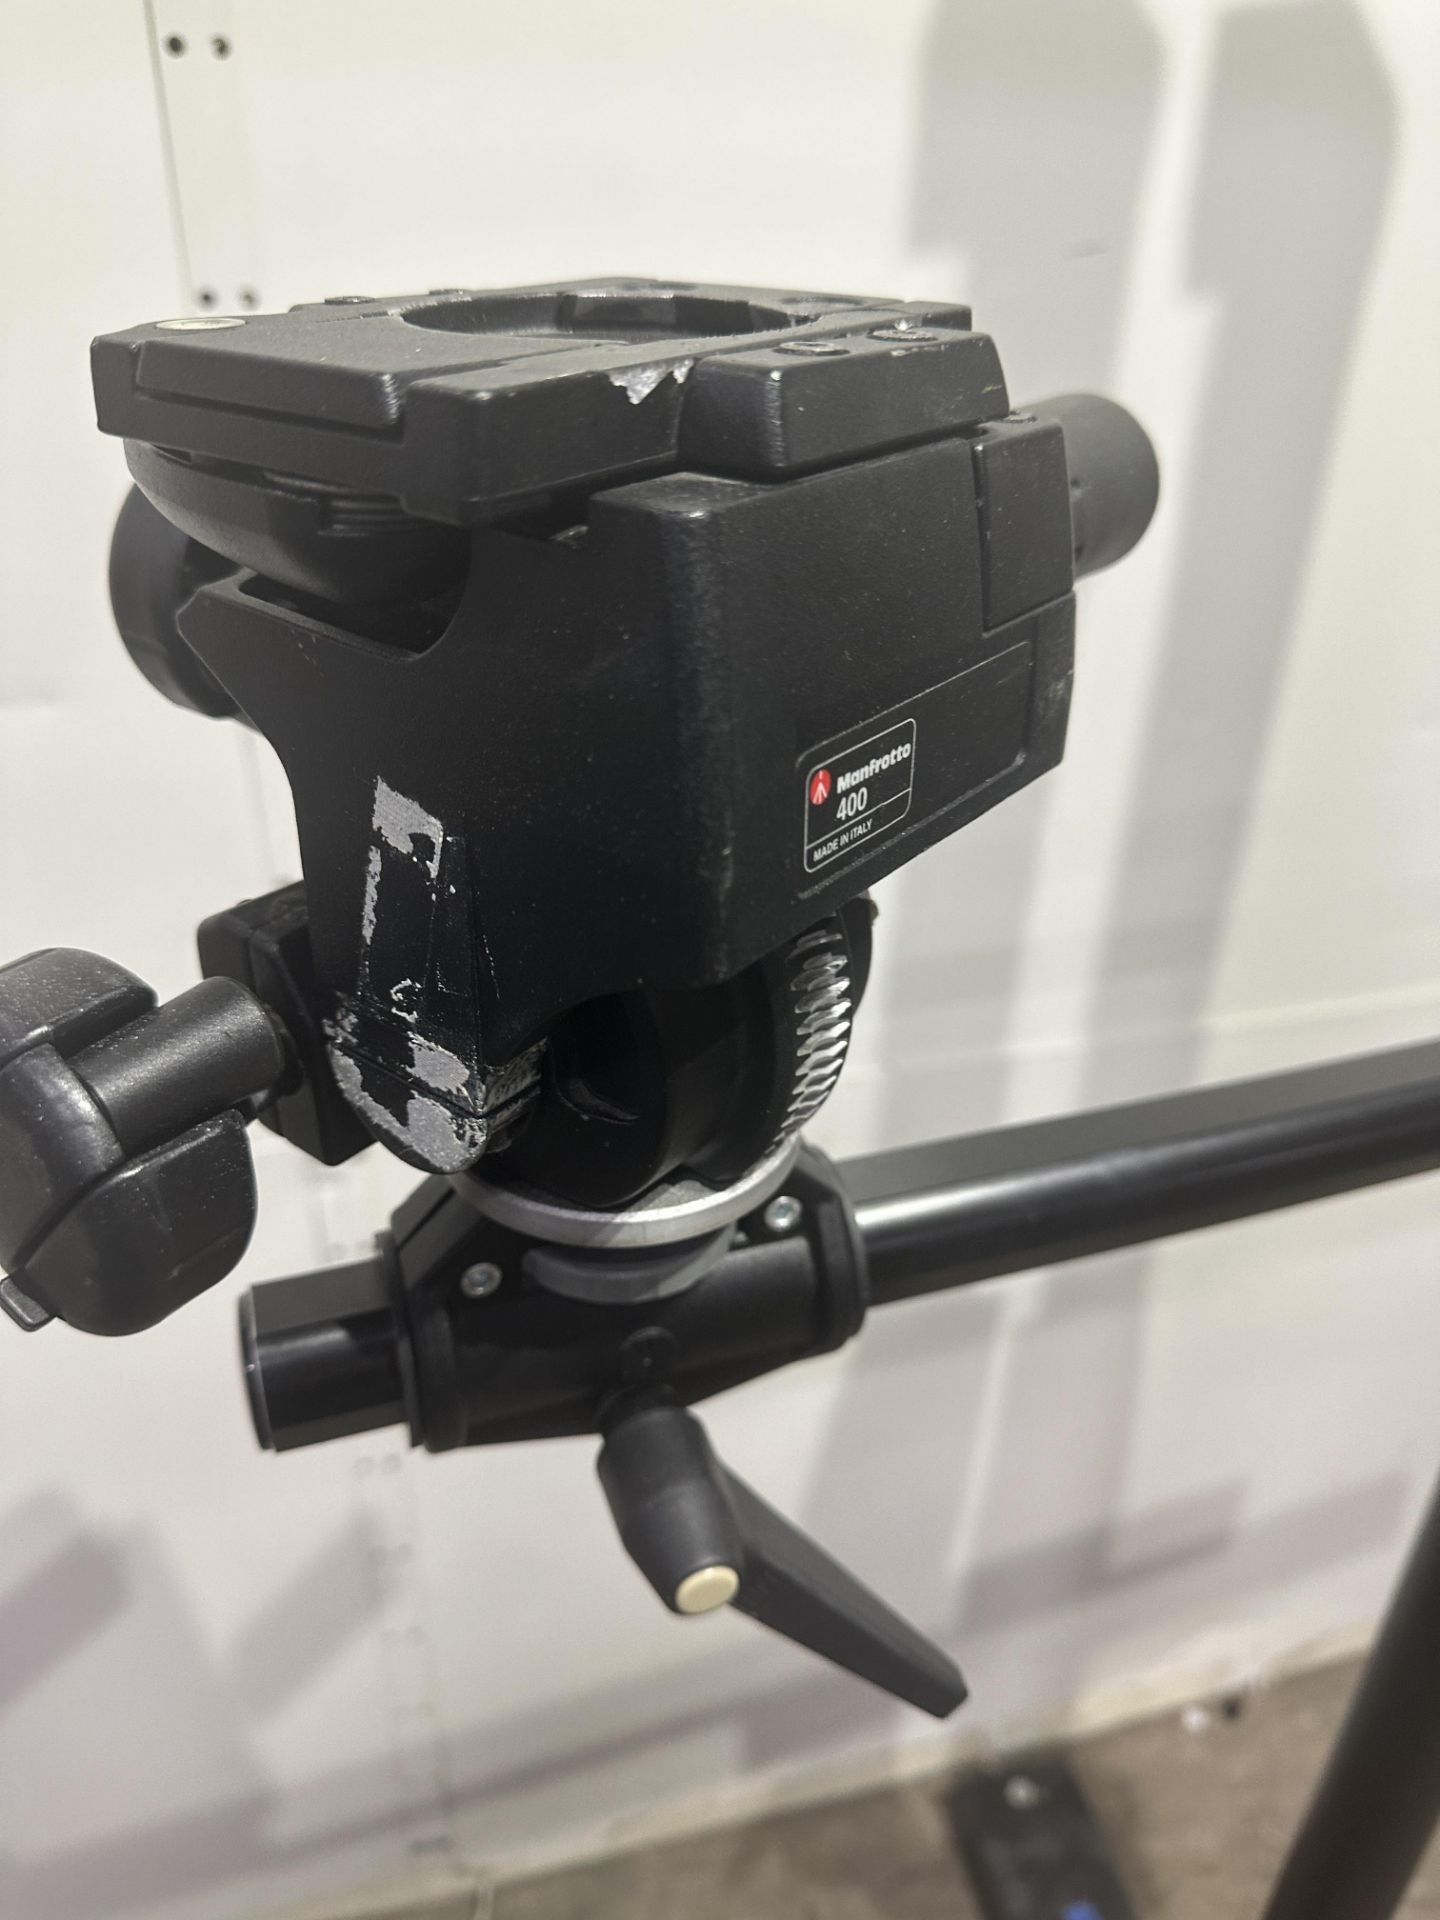 Manfrotto Mini Salon Studio camera stand 190 cm high with Monfrotto 410 geared head - Image 3 of 5